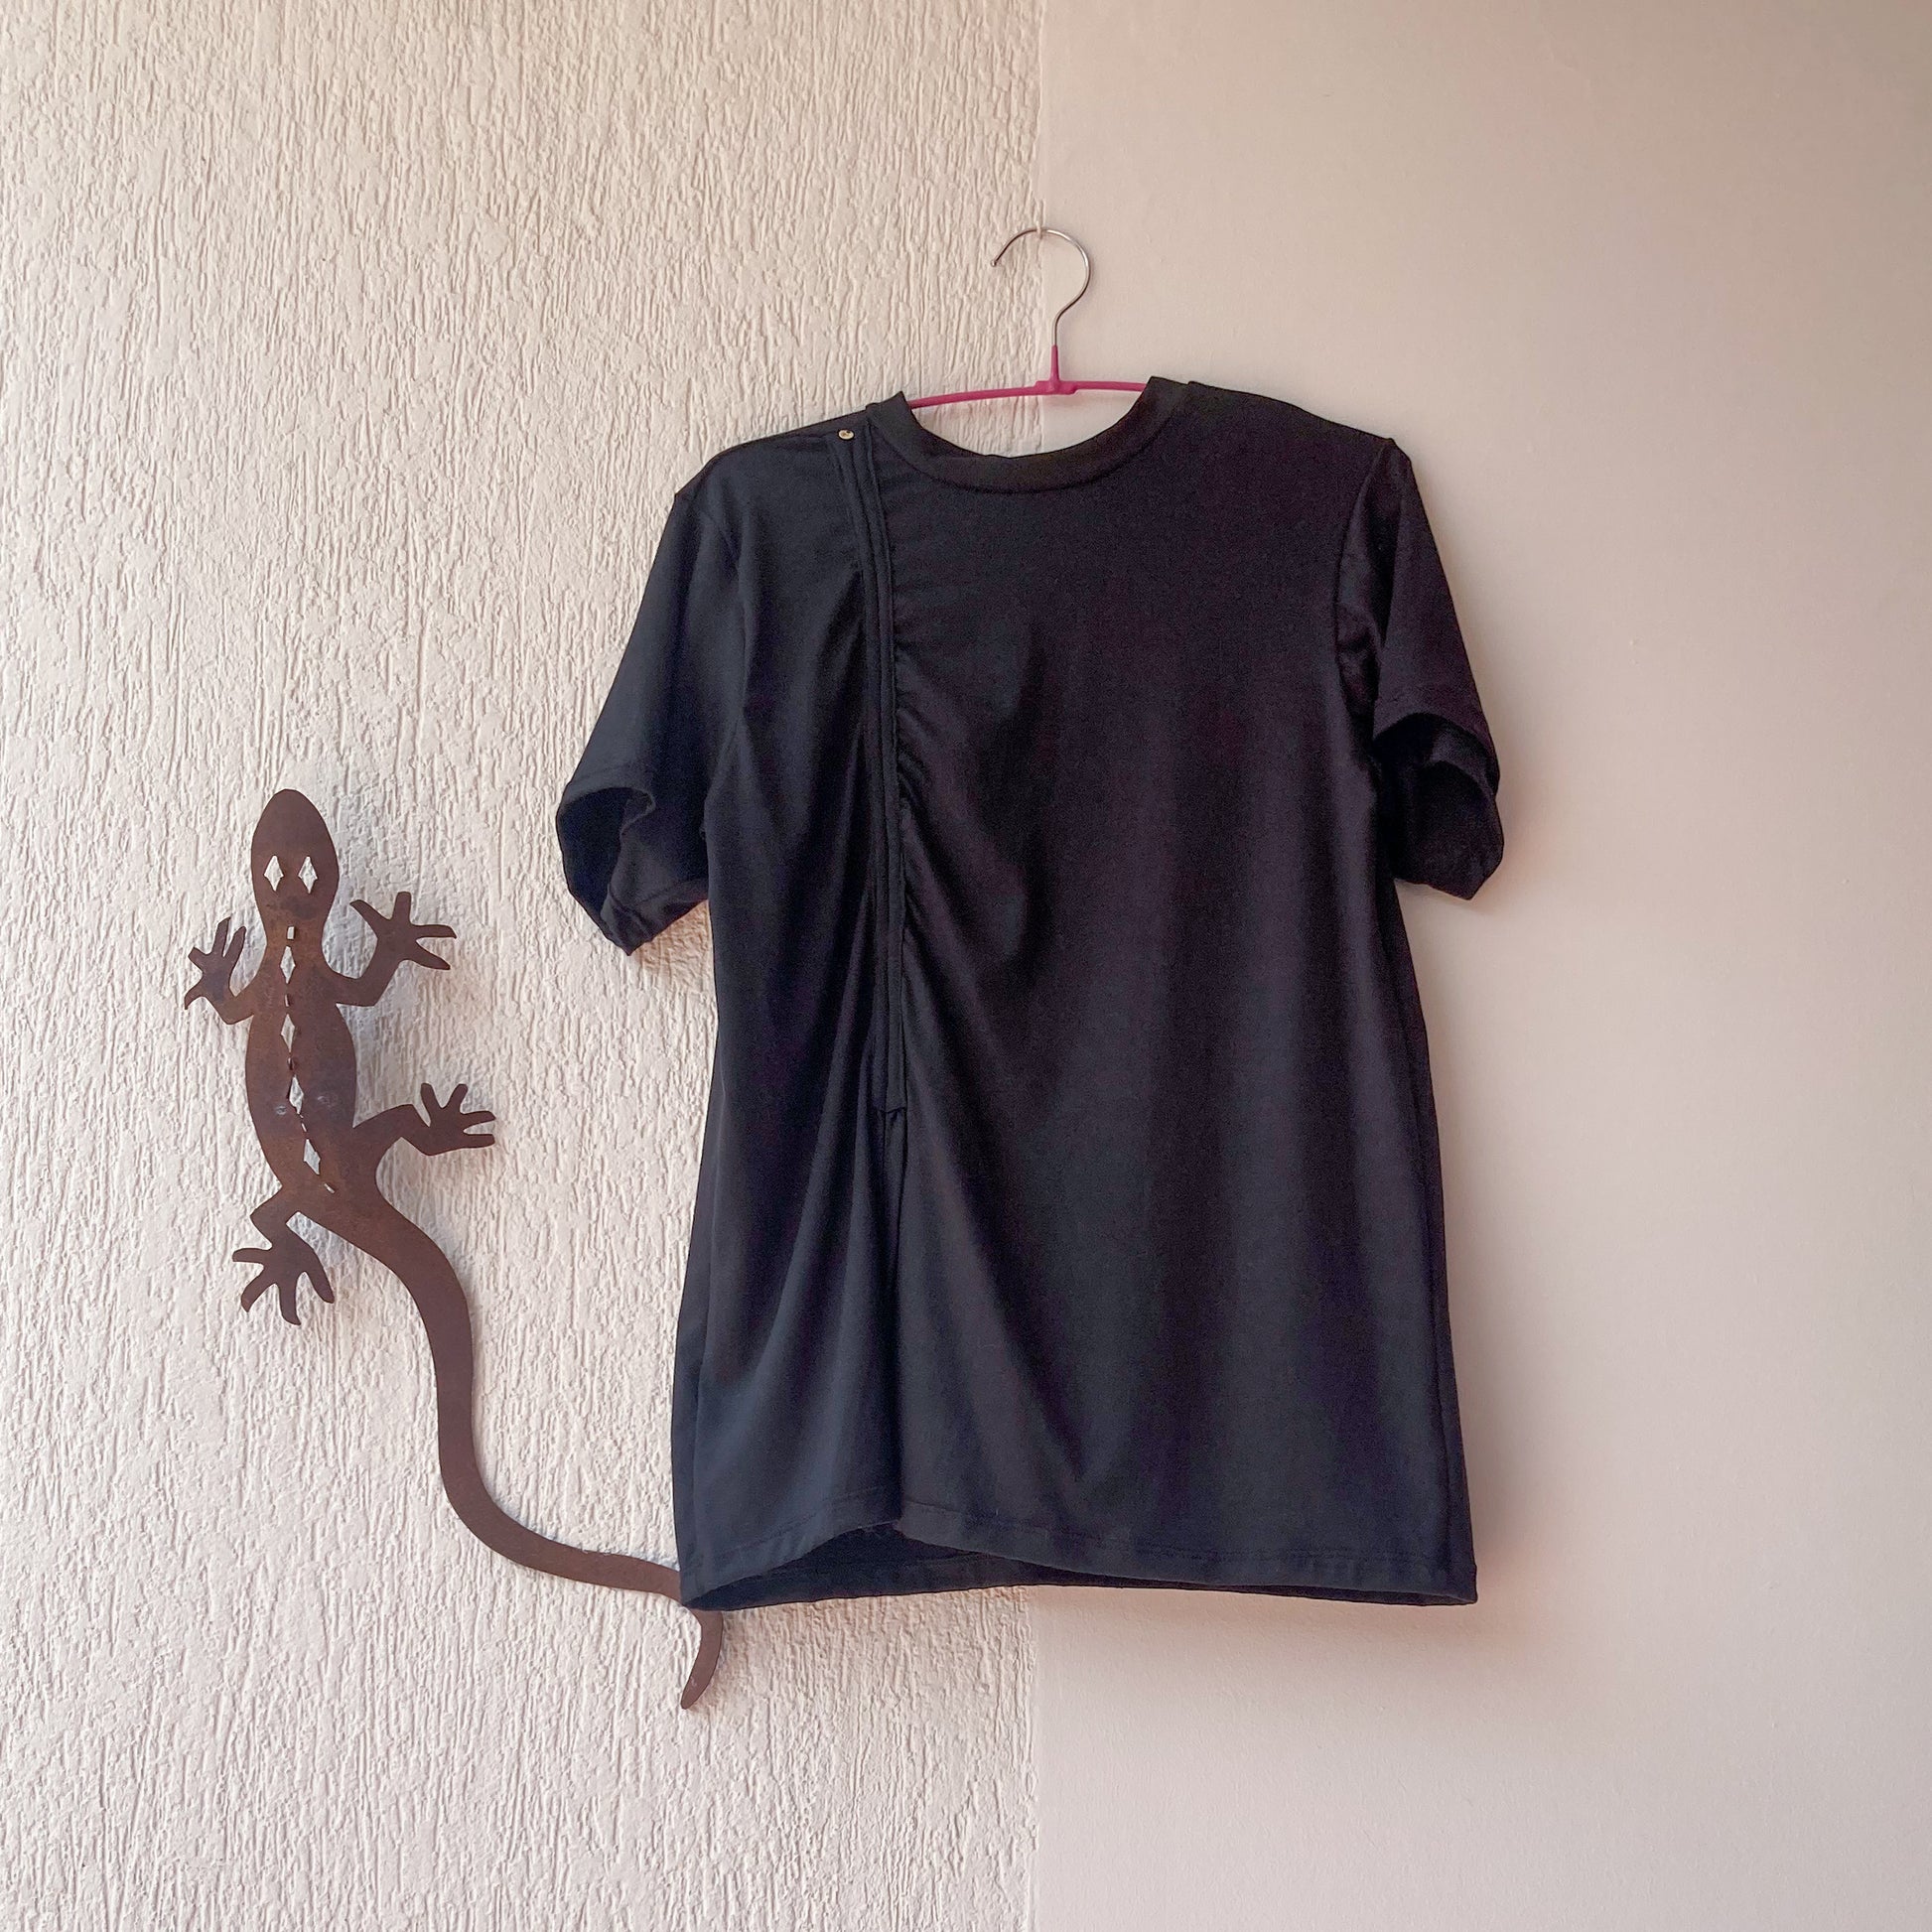 Camiseta negra oliva musita, talle largo con detalle de  fruncido en el costado. 100% Colombiana